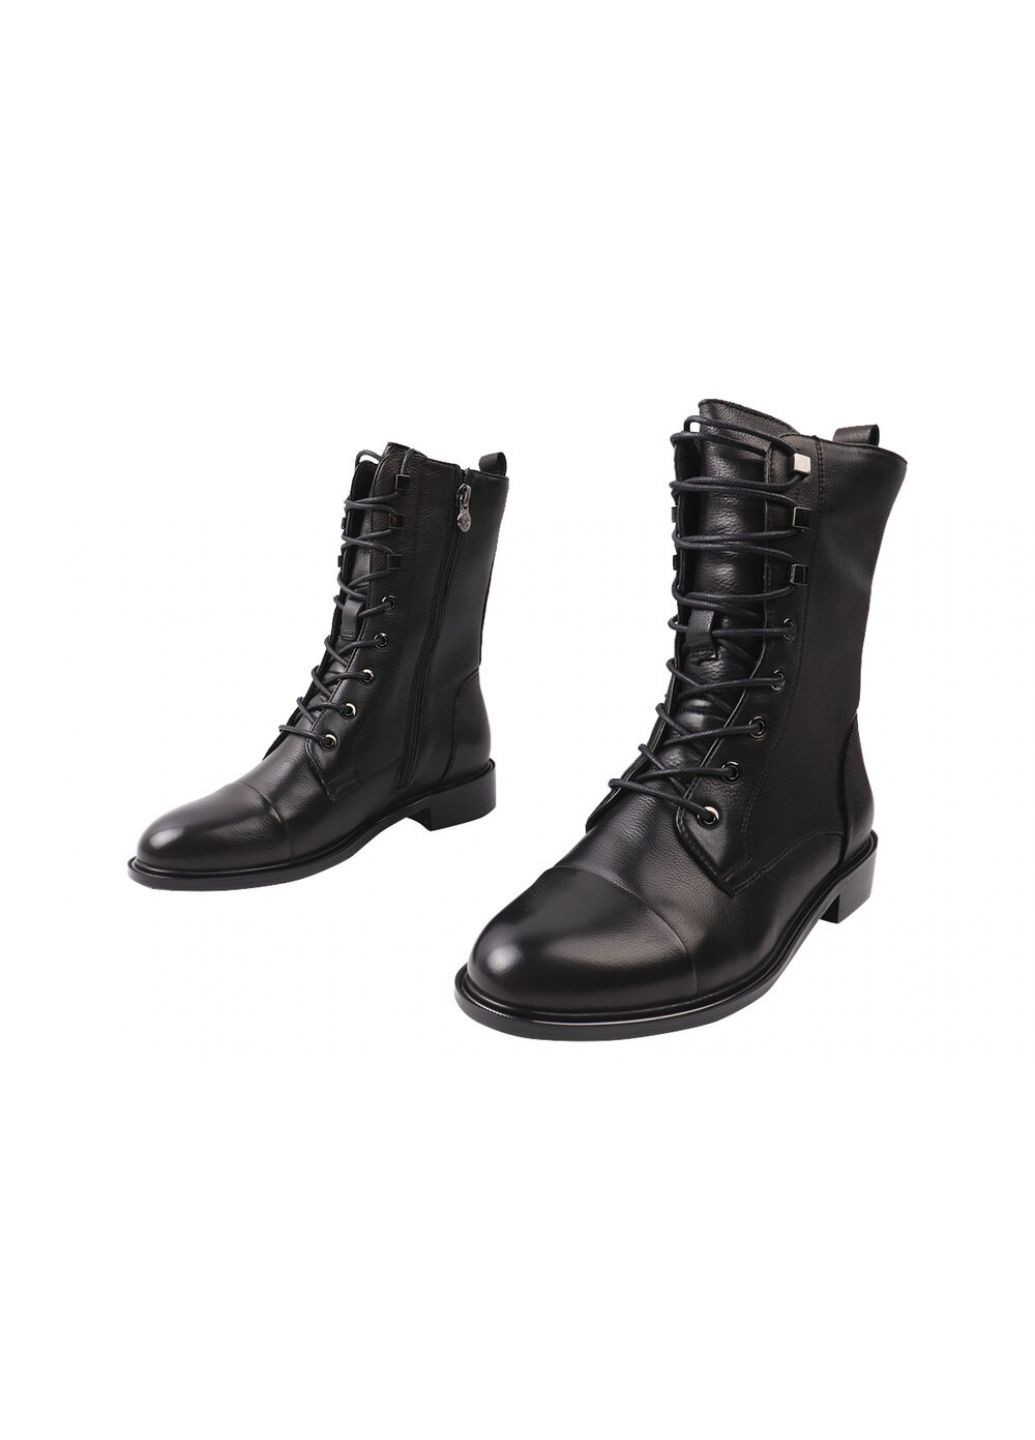 ботинки женские из натуральной кожы,высокие,на низком ходу,черные, Anemone